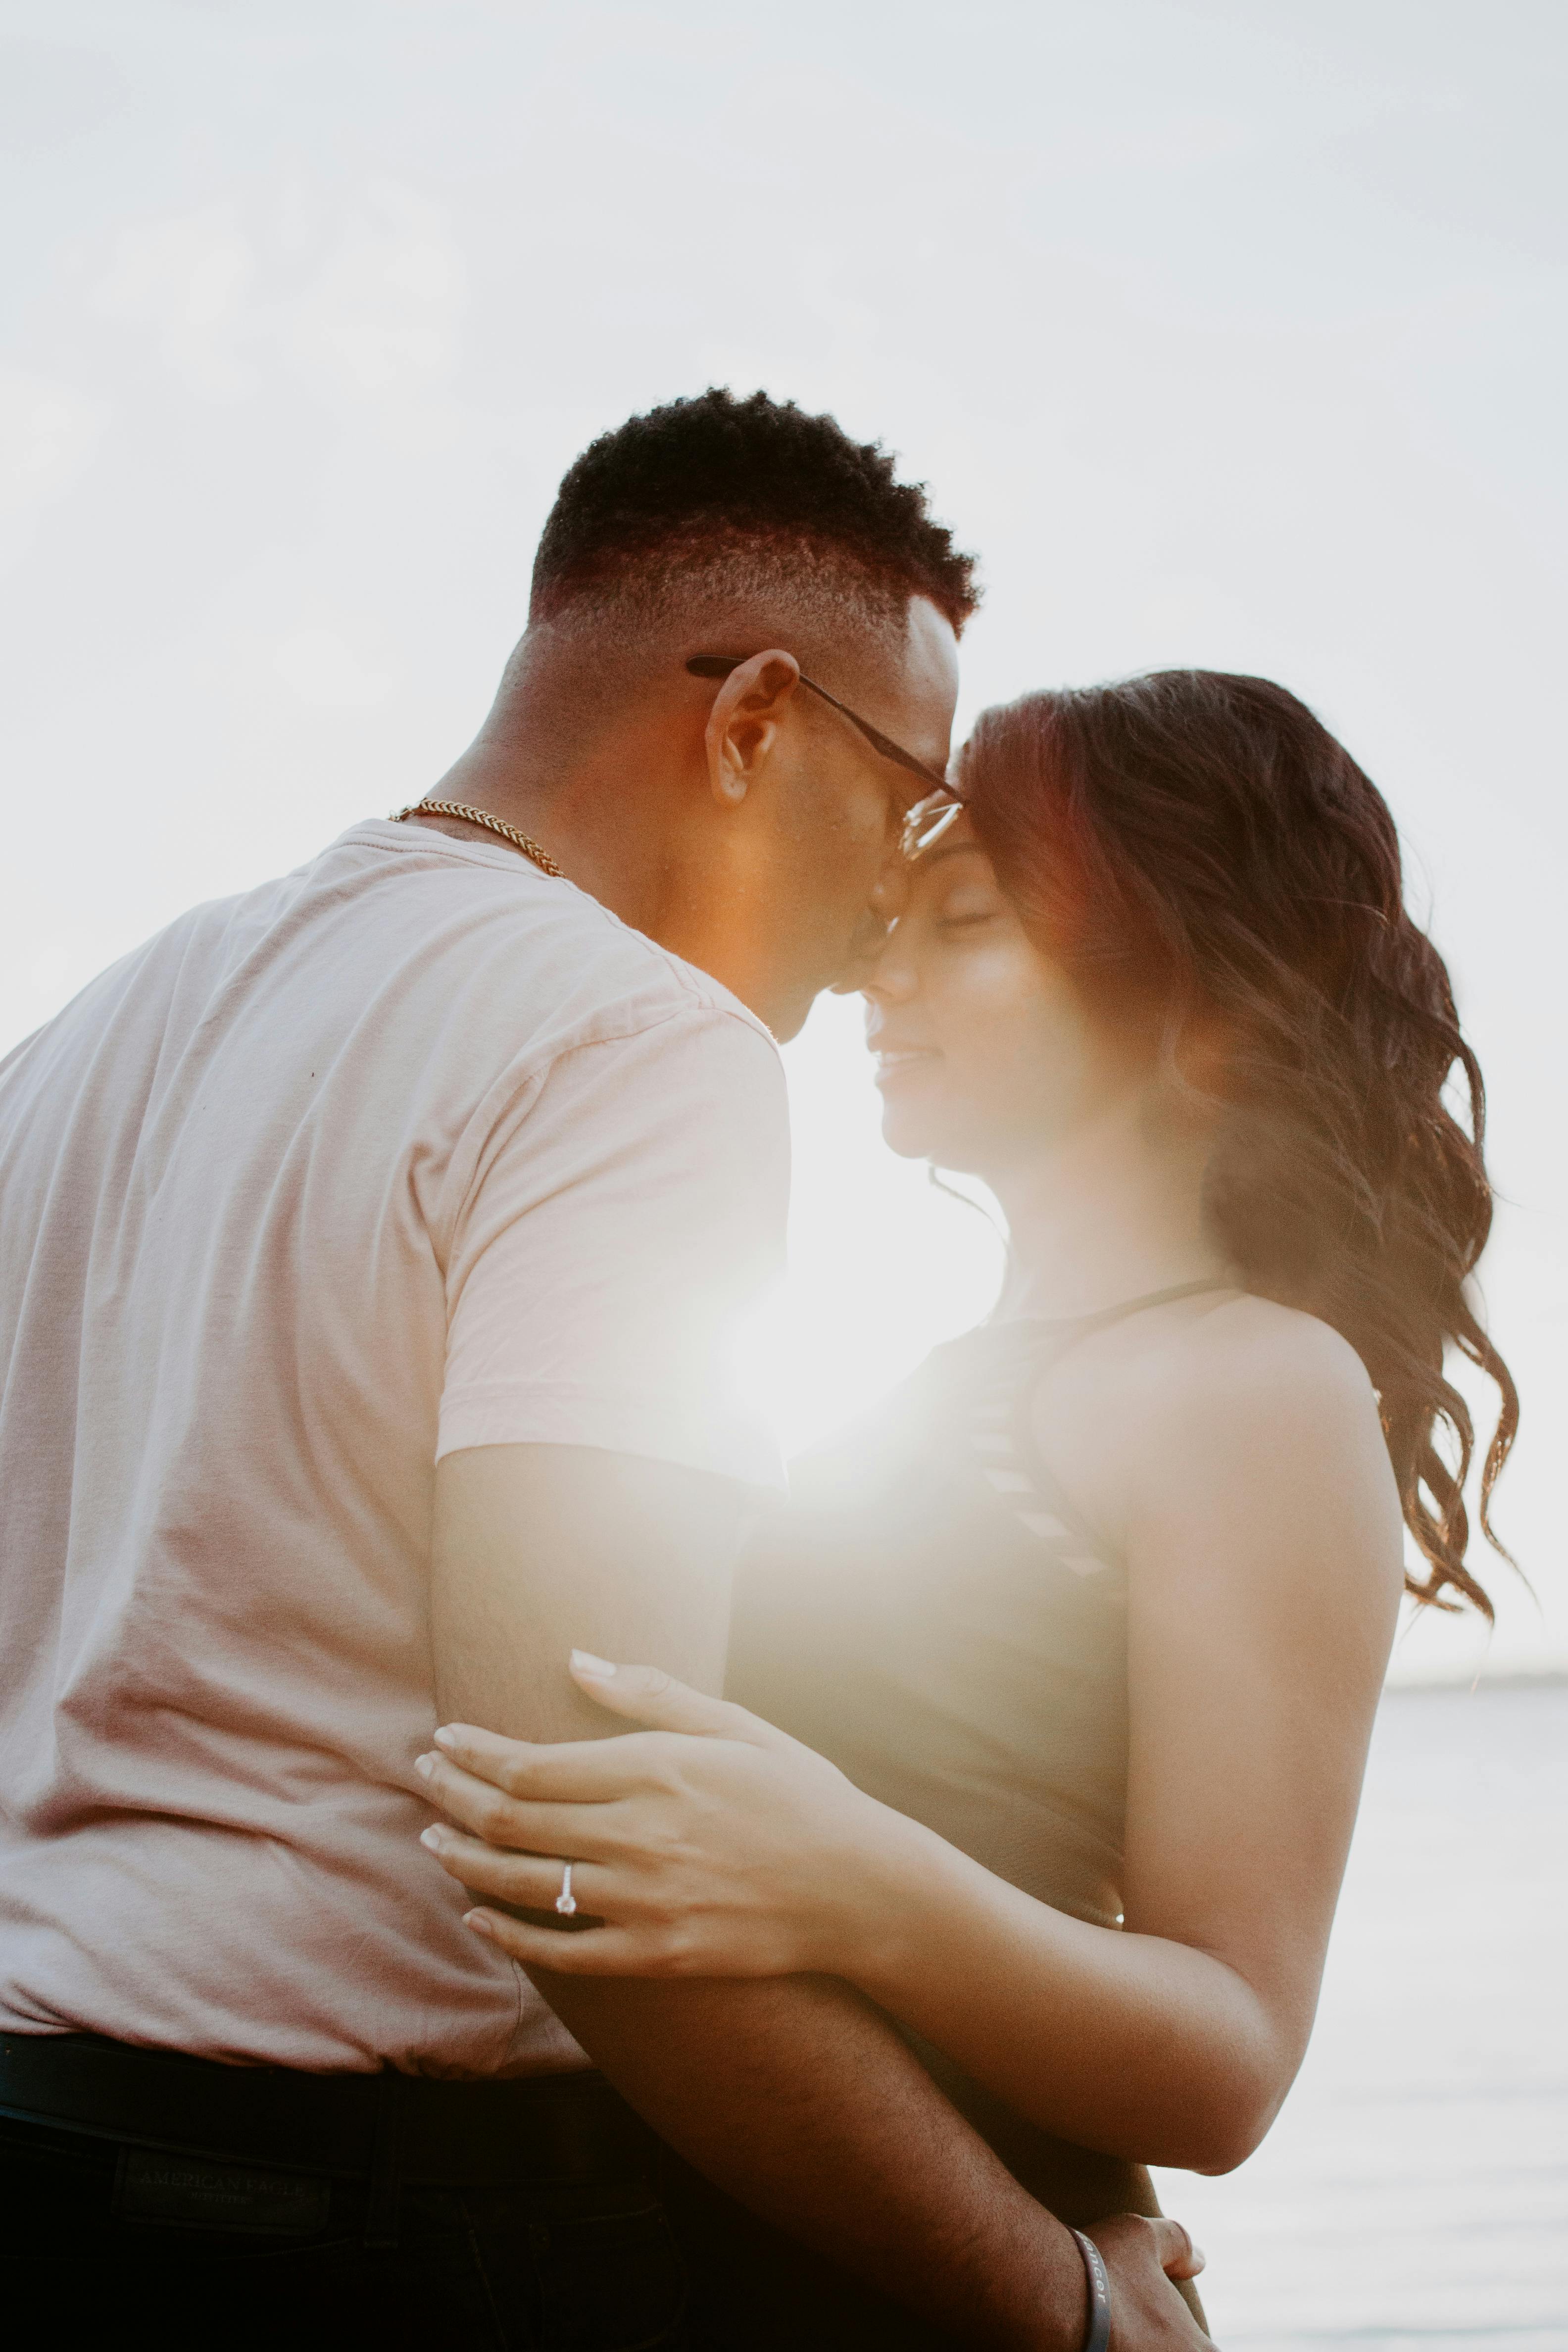 Un couple partageant un baiser au milieu d'un coucher de soleil | Source : Pexels